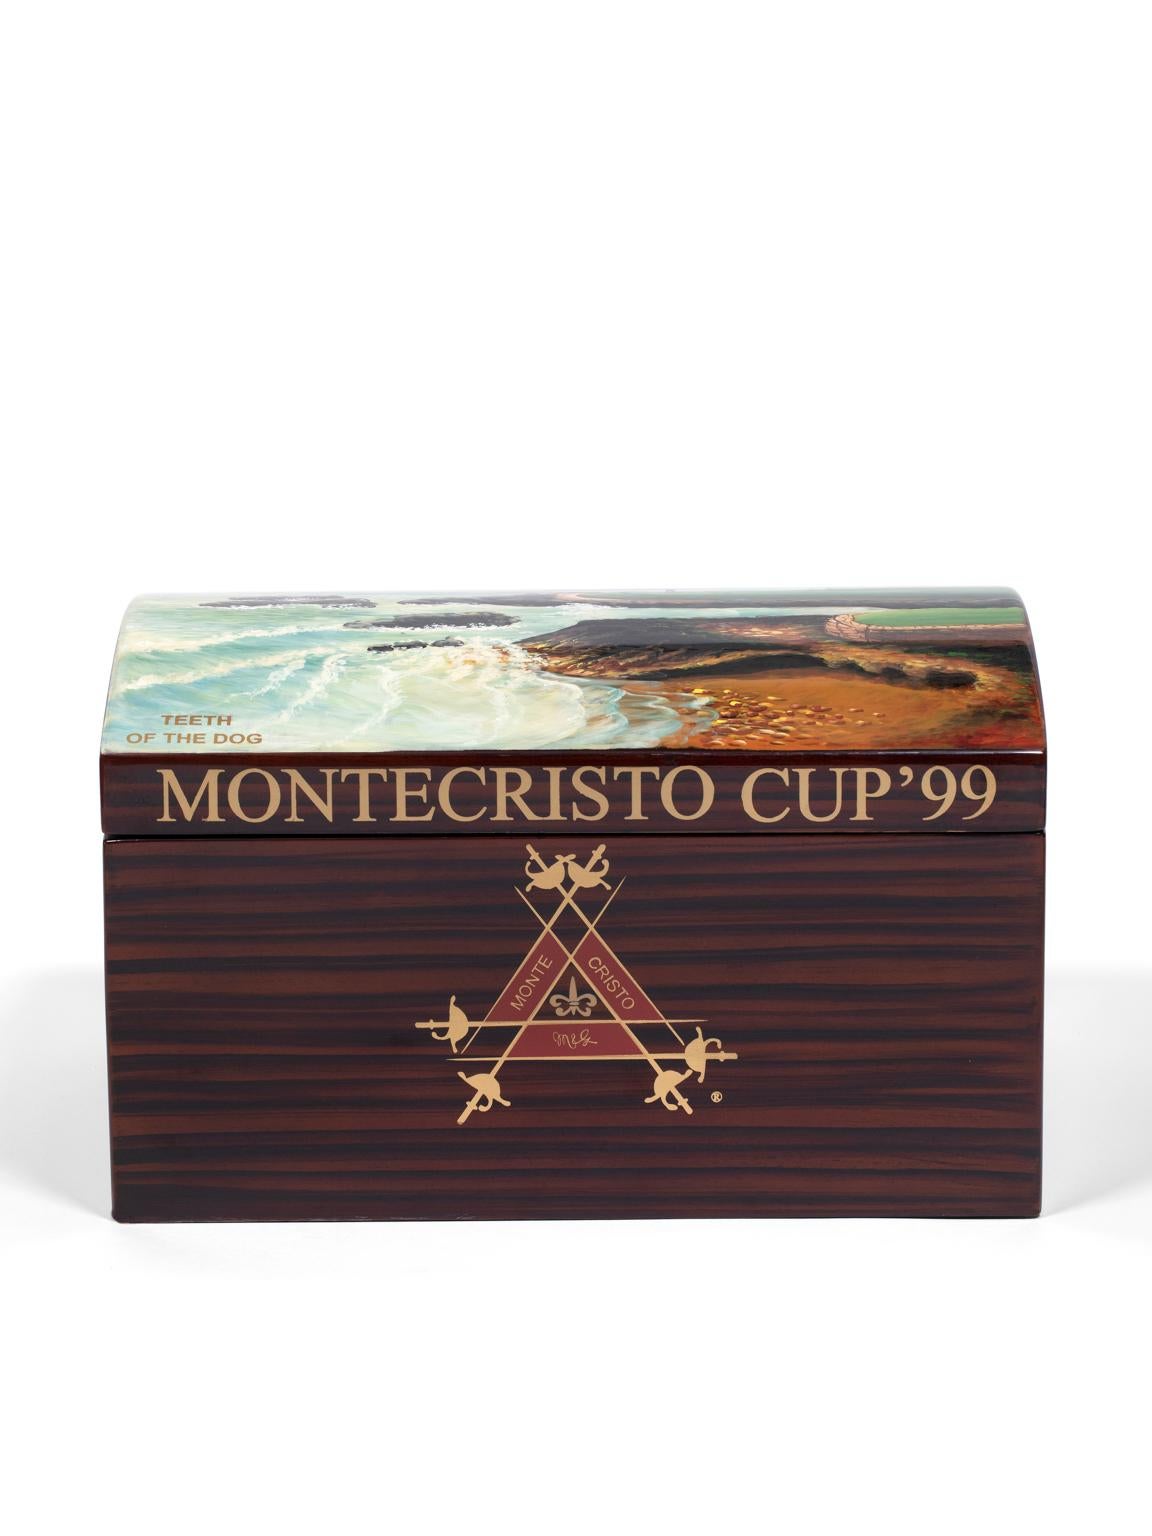 Dominican Montecristo Cigar Box, 